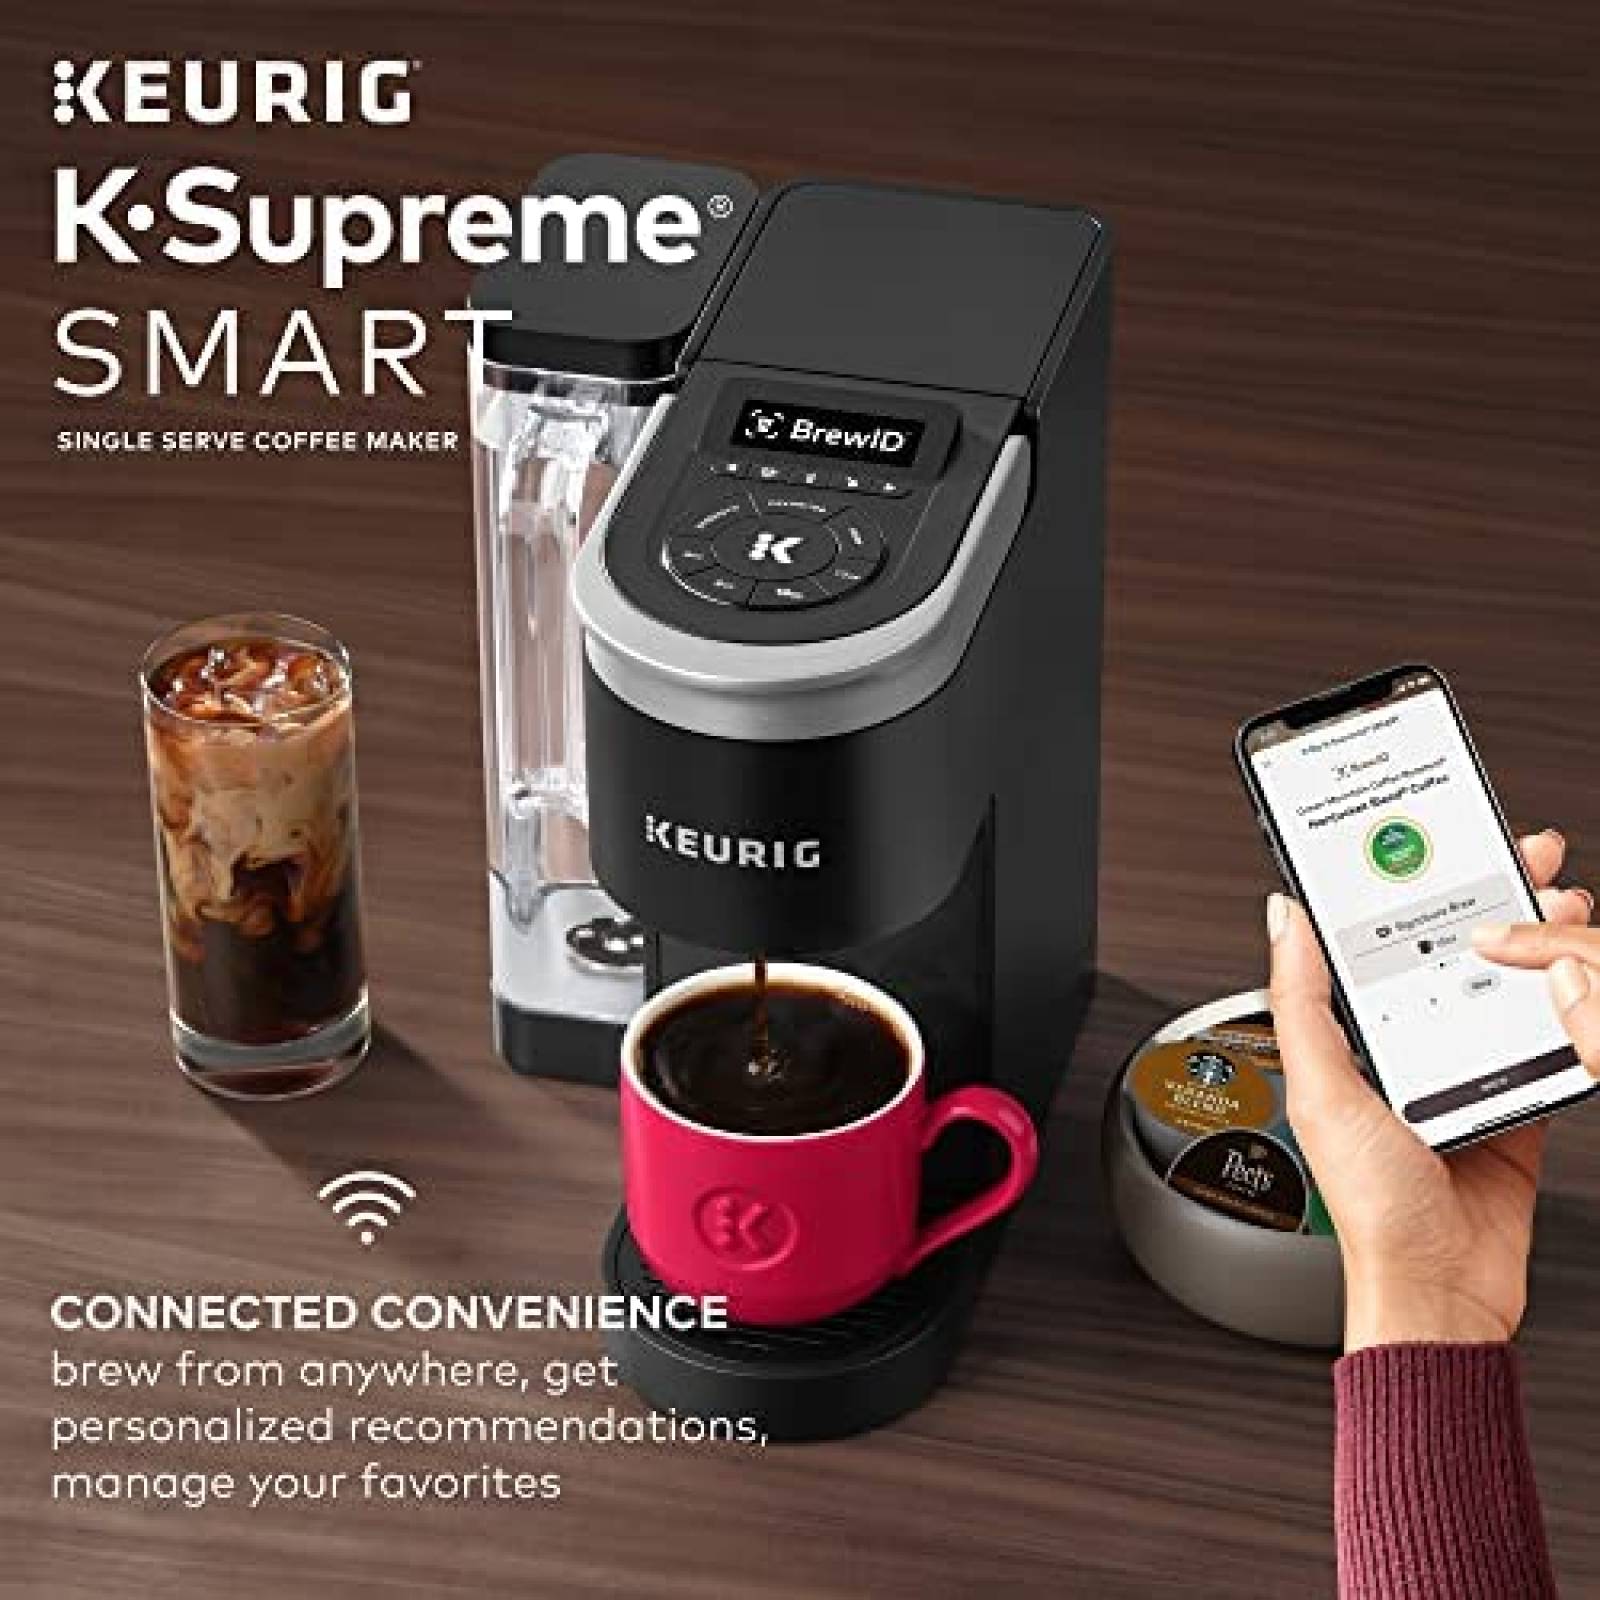 Cafetera de una Sola Porcion Keurig K-Supreme SMART con Wifi